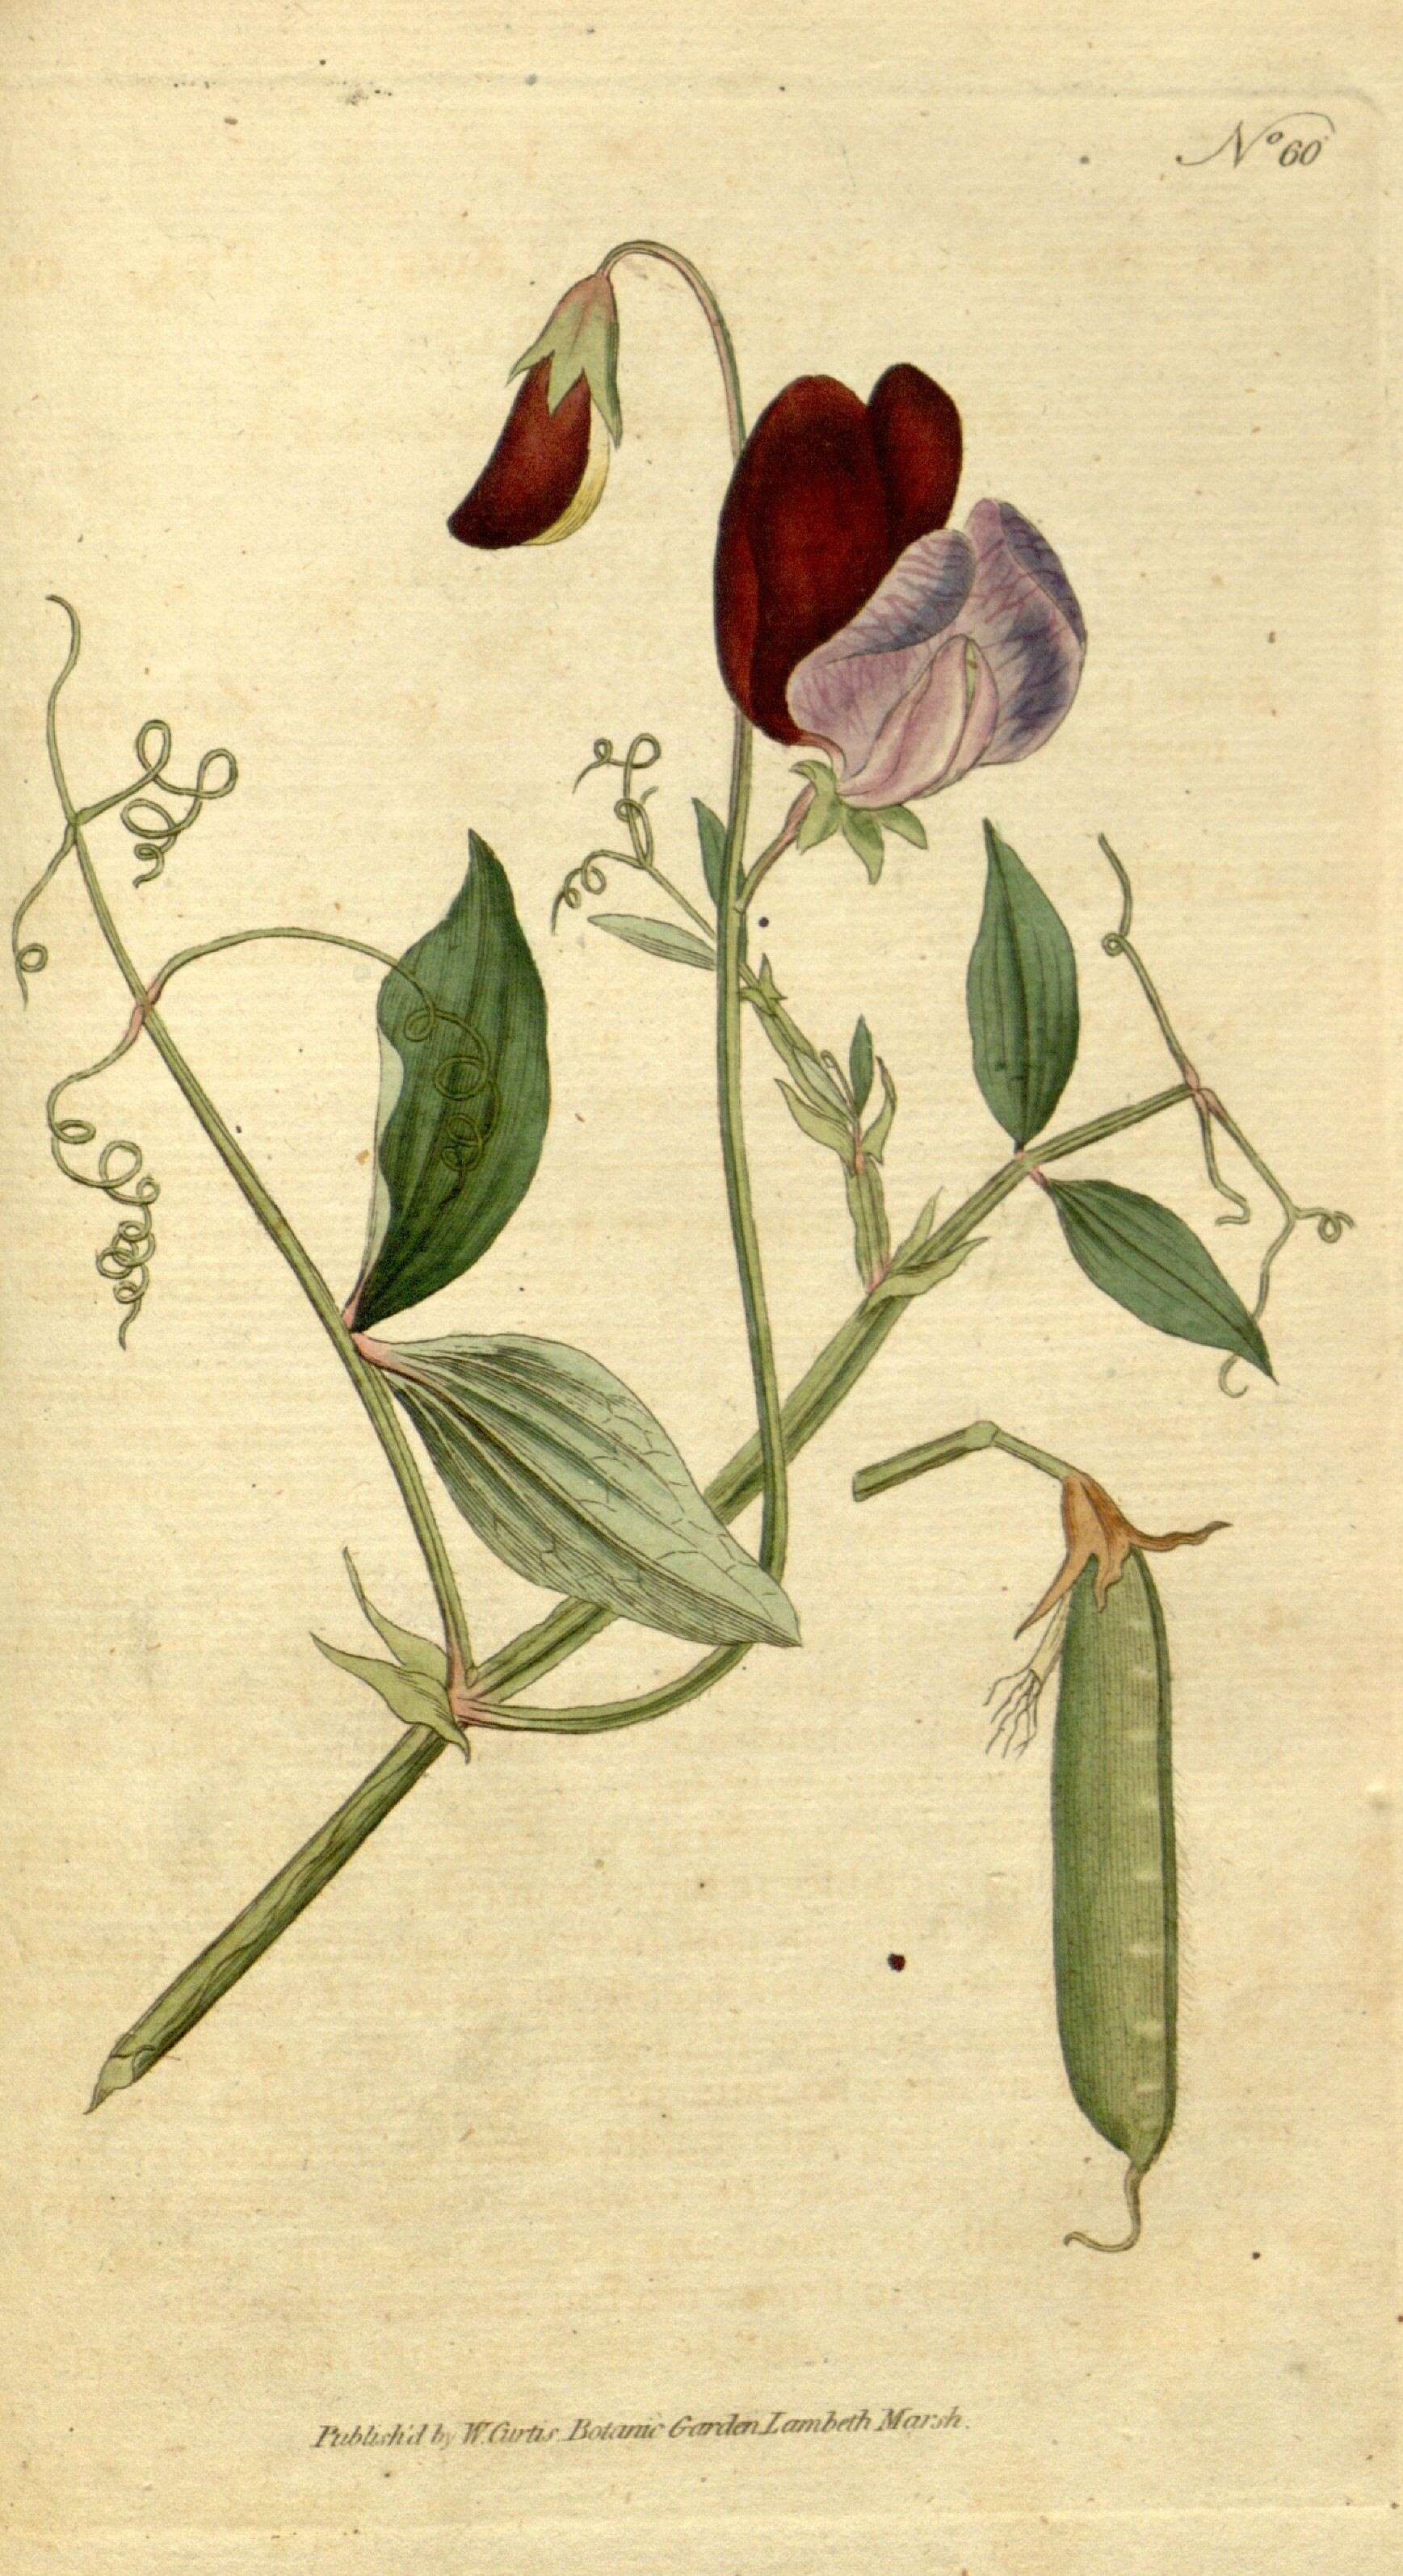 Lathyrus odoratus L. resmi